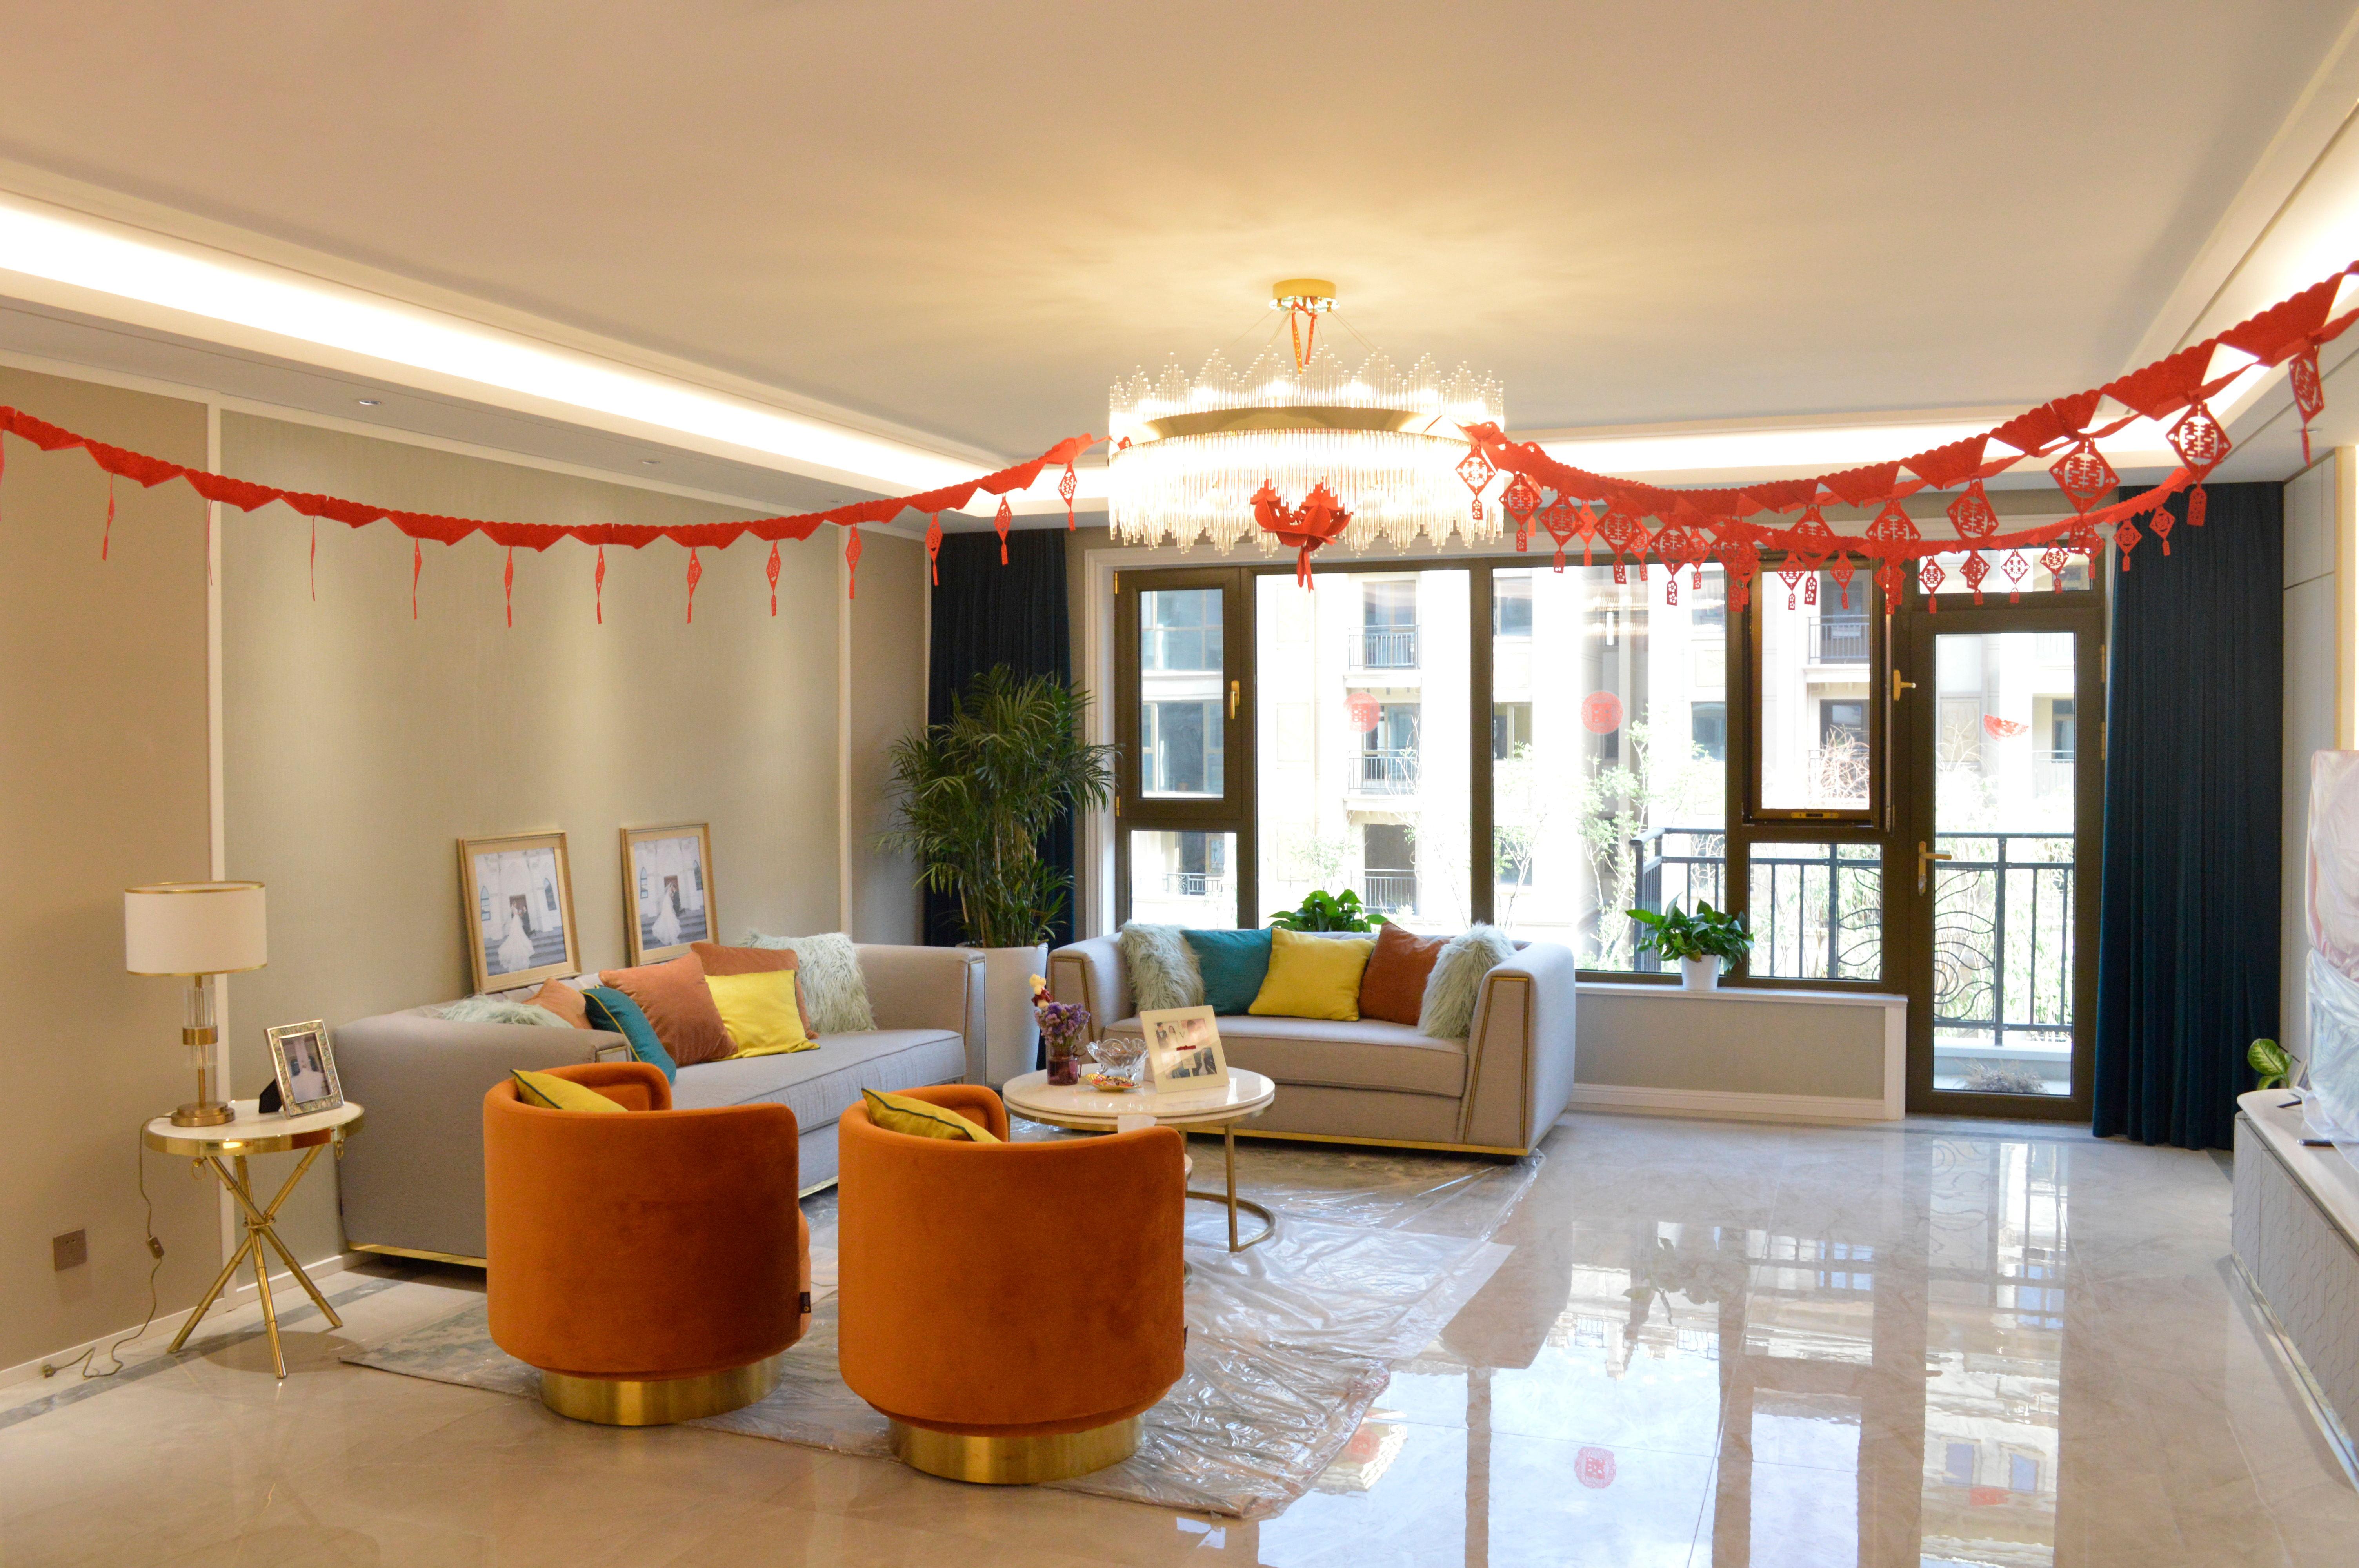 客 厅:爱马仕橙色系沙发与客厅整体形成强烈的对比,加入金属元素的